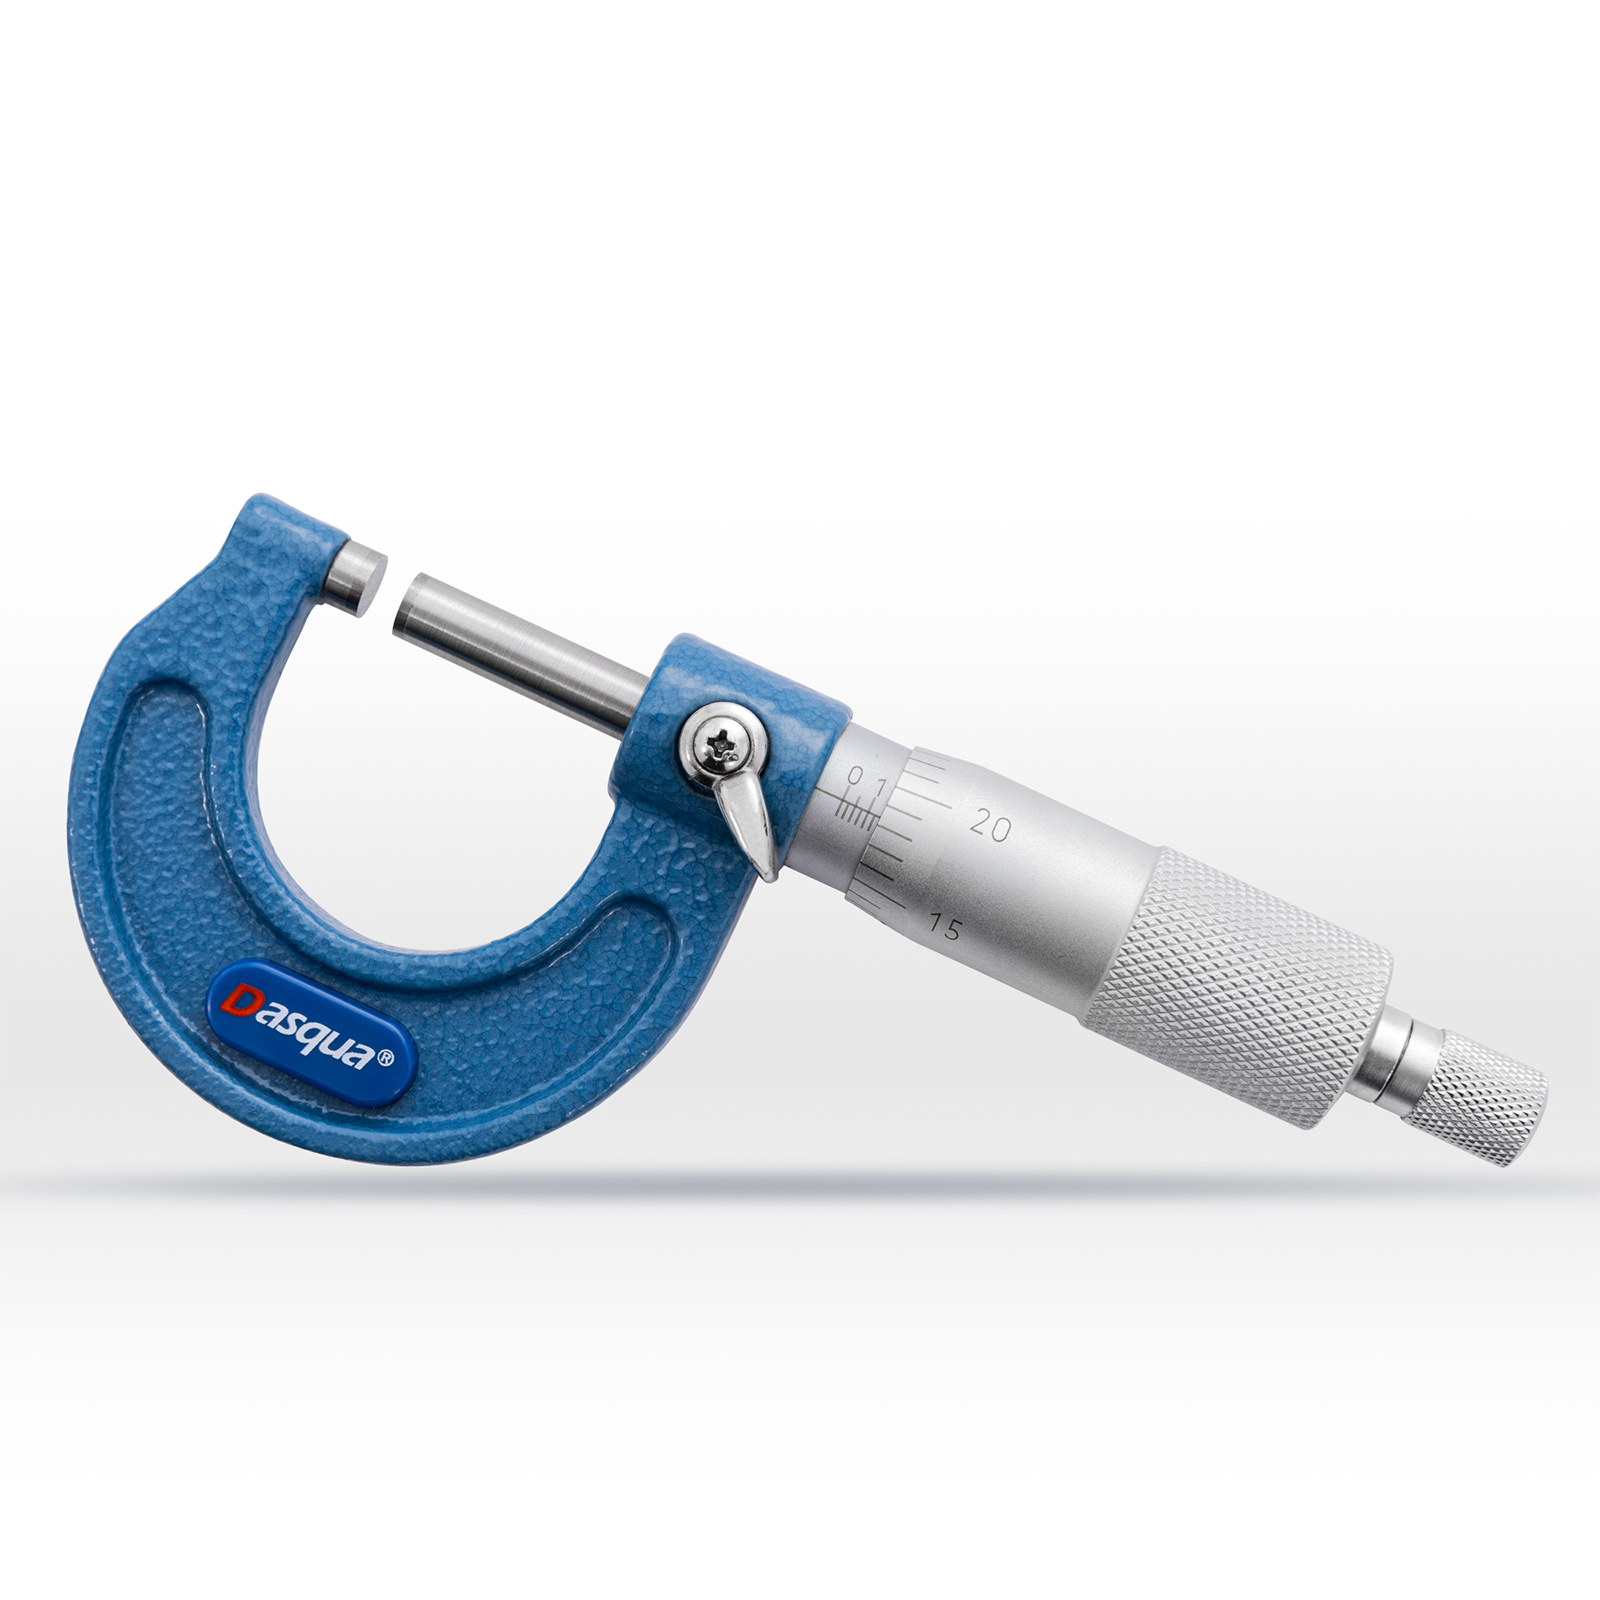  Dasqua 4111-8105-A ໄມໂຄມິເຕີພາຍນອກ |  DIN863 0-25mm Micrometer Screw |  ຄວາມແມ່ນຍໍາສູງ 0.004mm |  ສະແຕນເລດ Spindle & Carbide ການວັດແທກພື້ນຜິວ